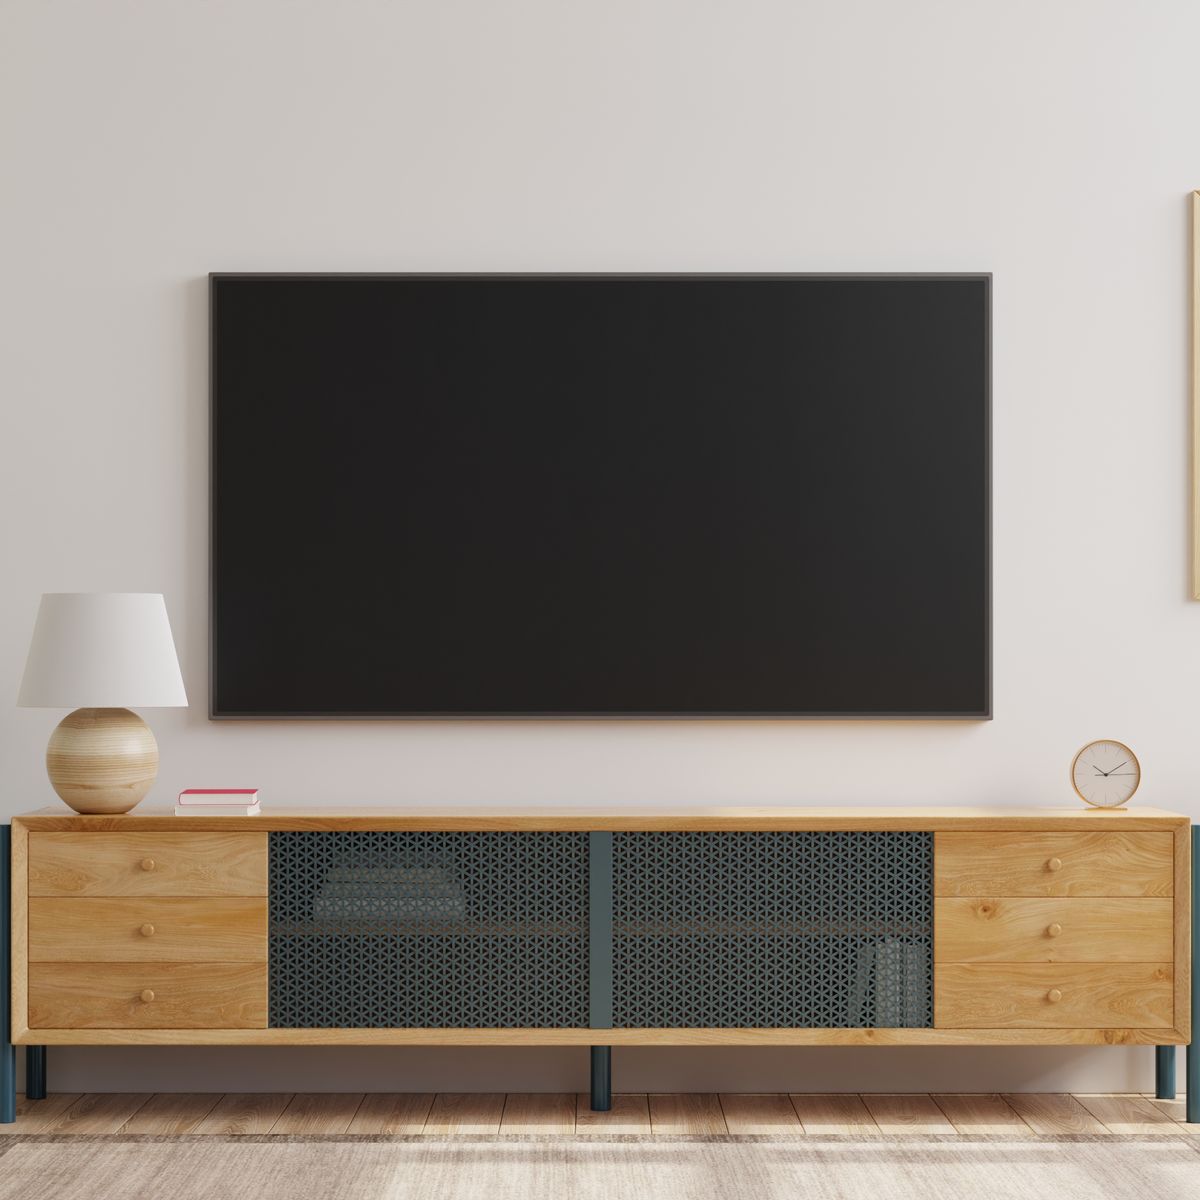 Smart TV baratas: guía de compra actualizada - Giztele